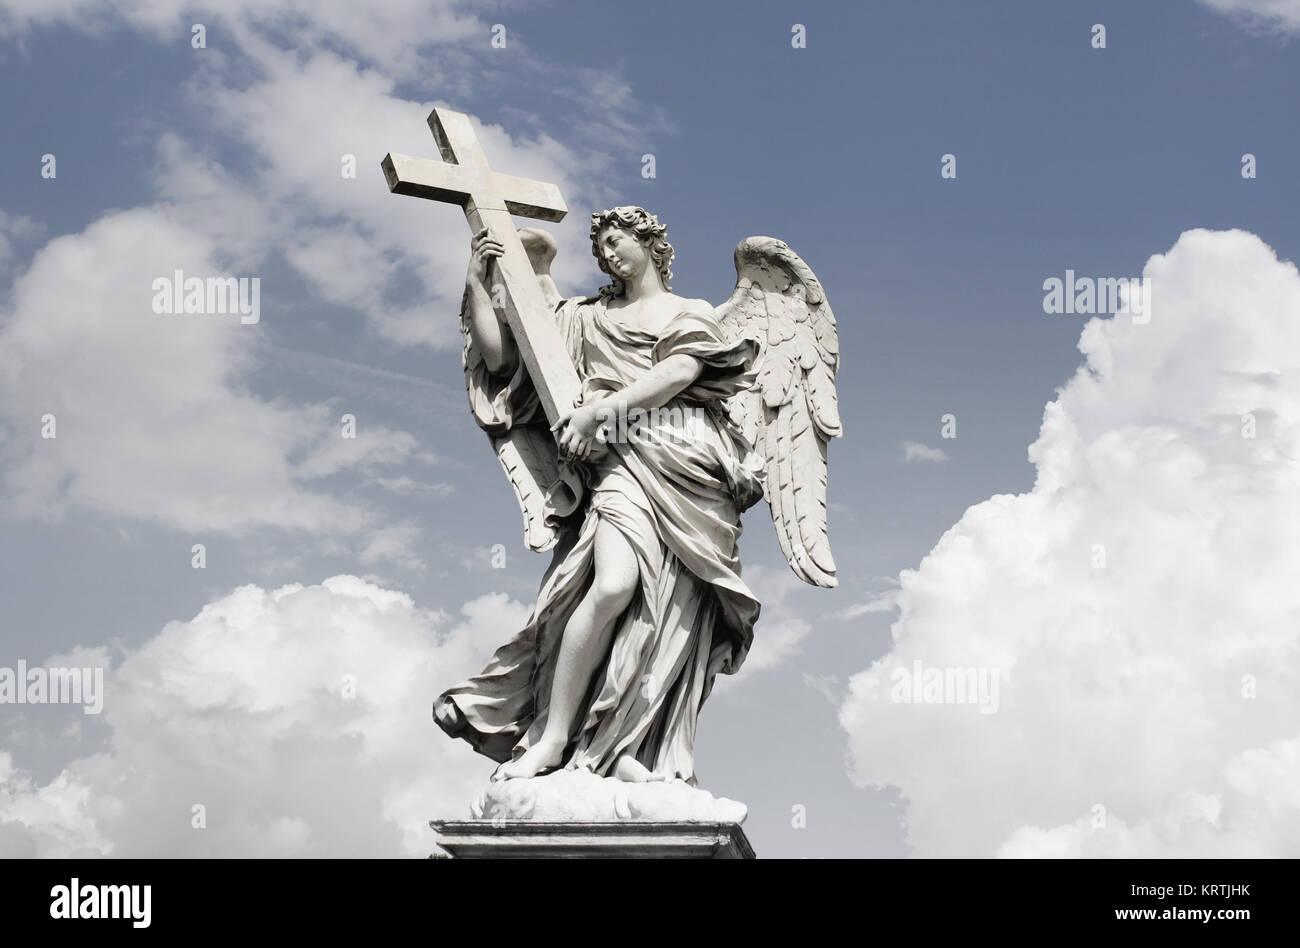 Schöne Engel Skulptur in Rom mit eine unglaubliche dramatischen  Wolkenhimmel auf dem Hintergrund Stockfotografie - Alamy